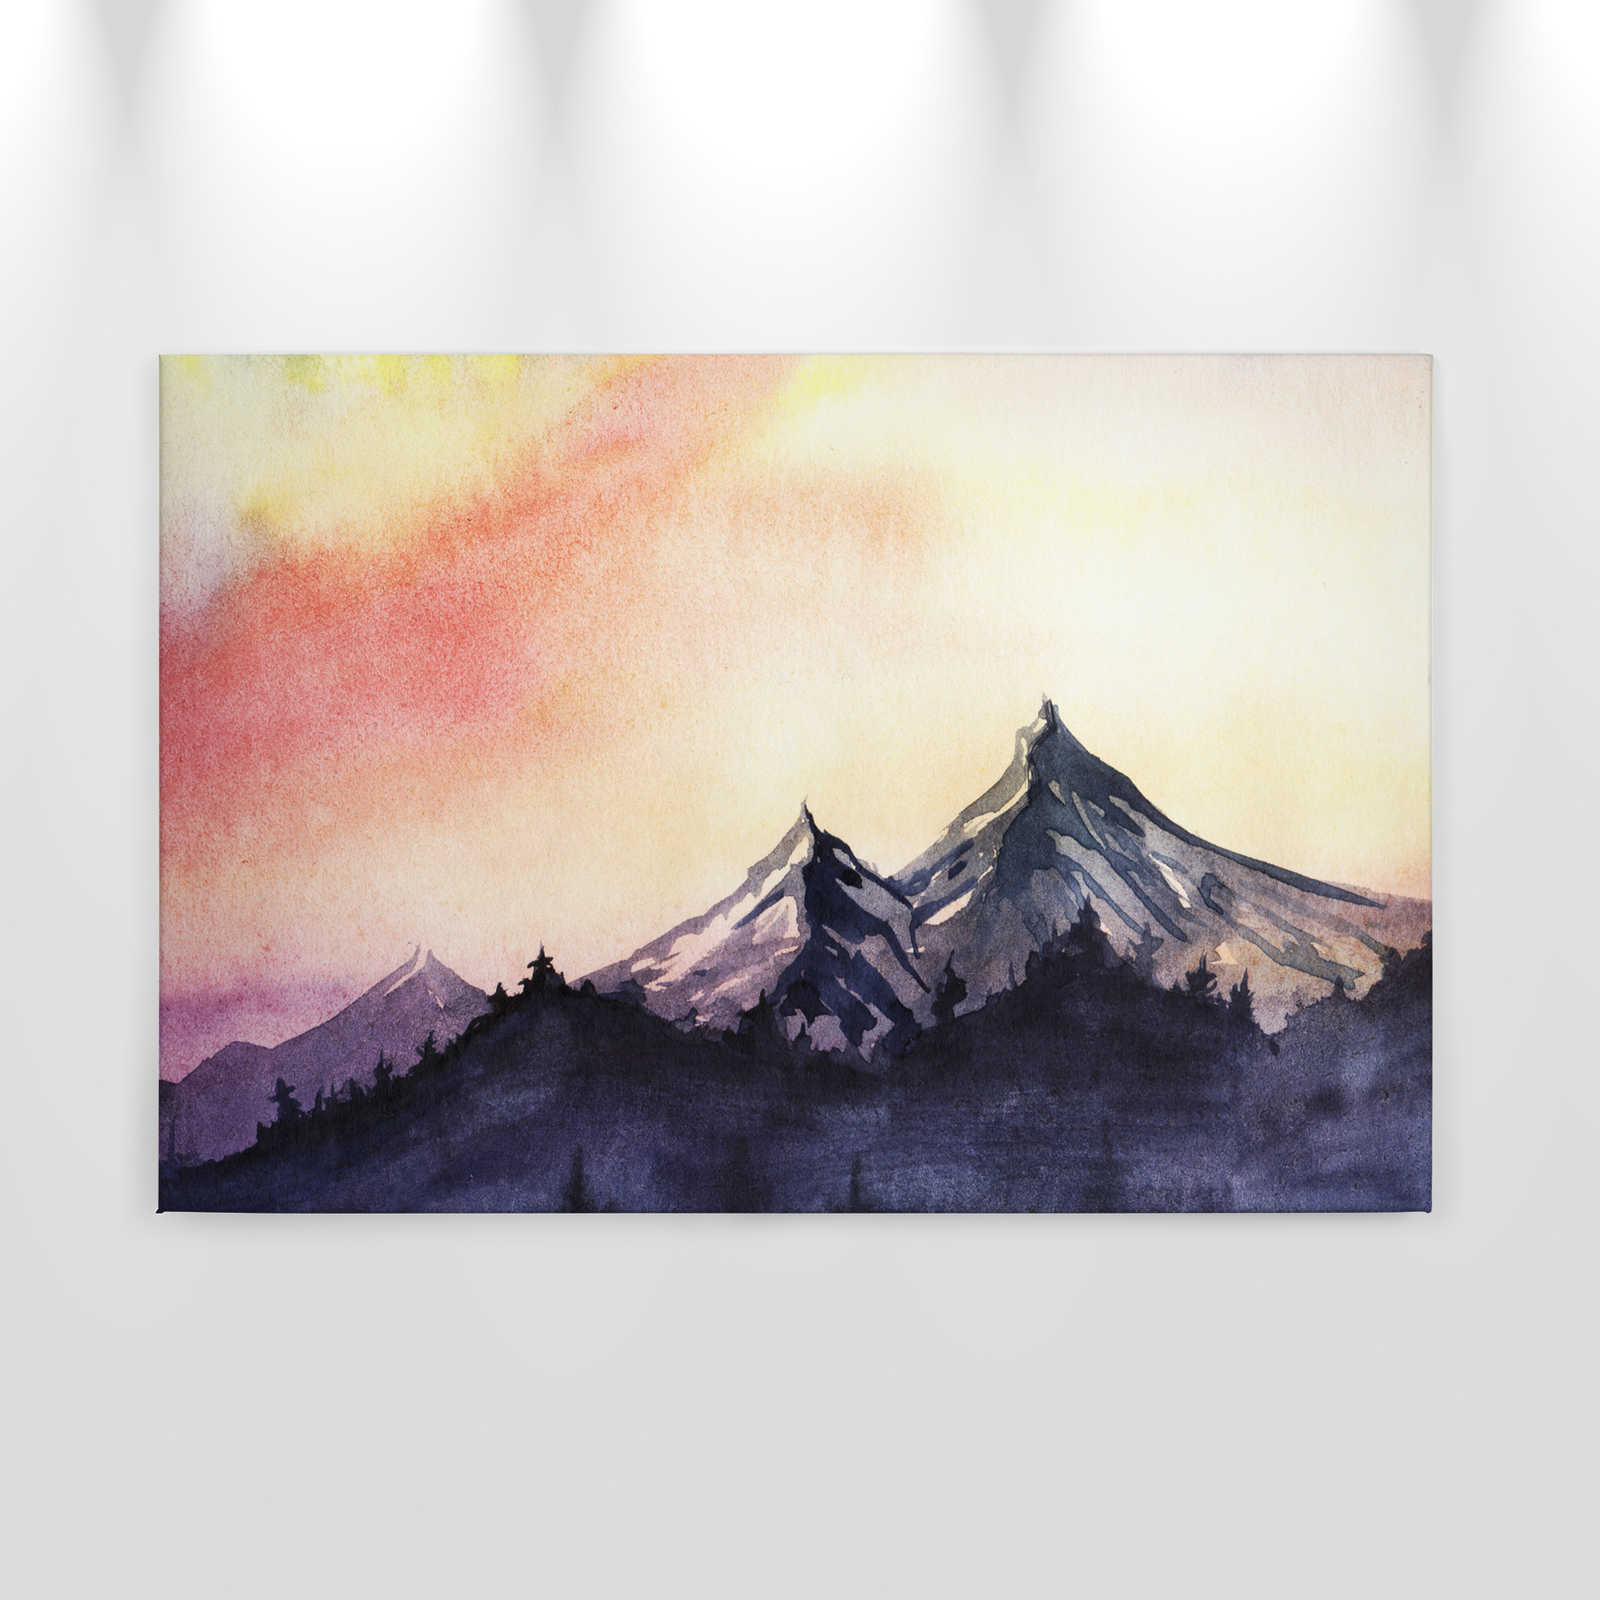             Canvas wand met berglandschap in aquarelstijl - 0,90 m x 0,60 m
        